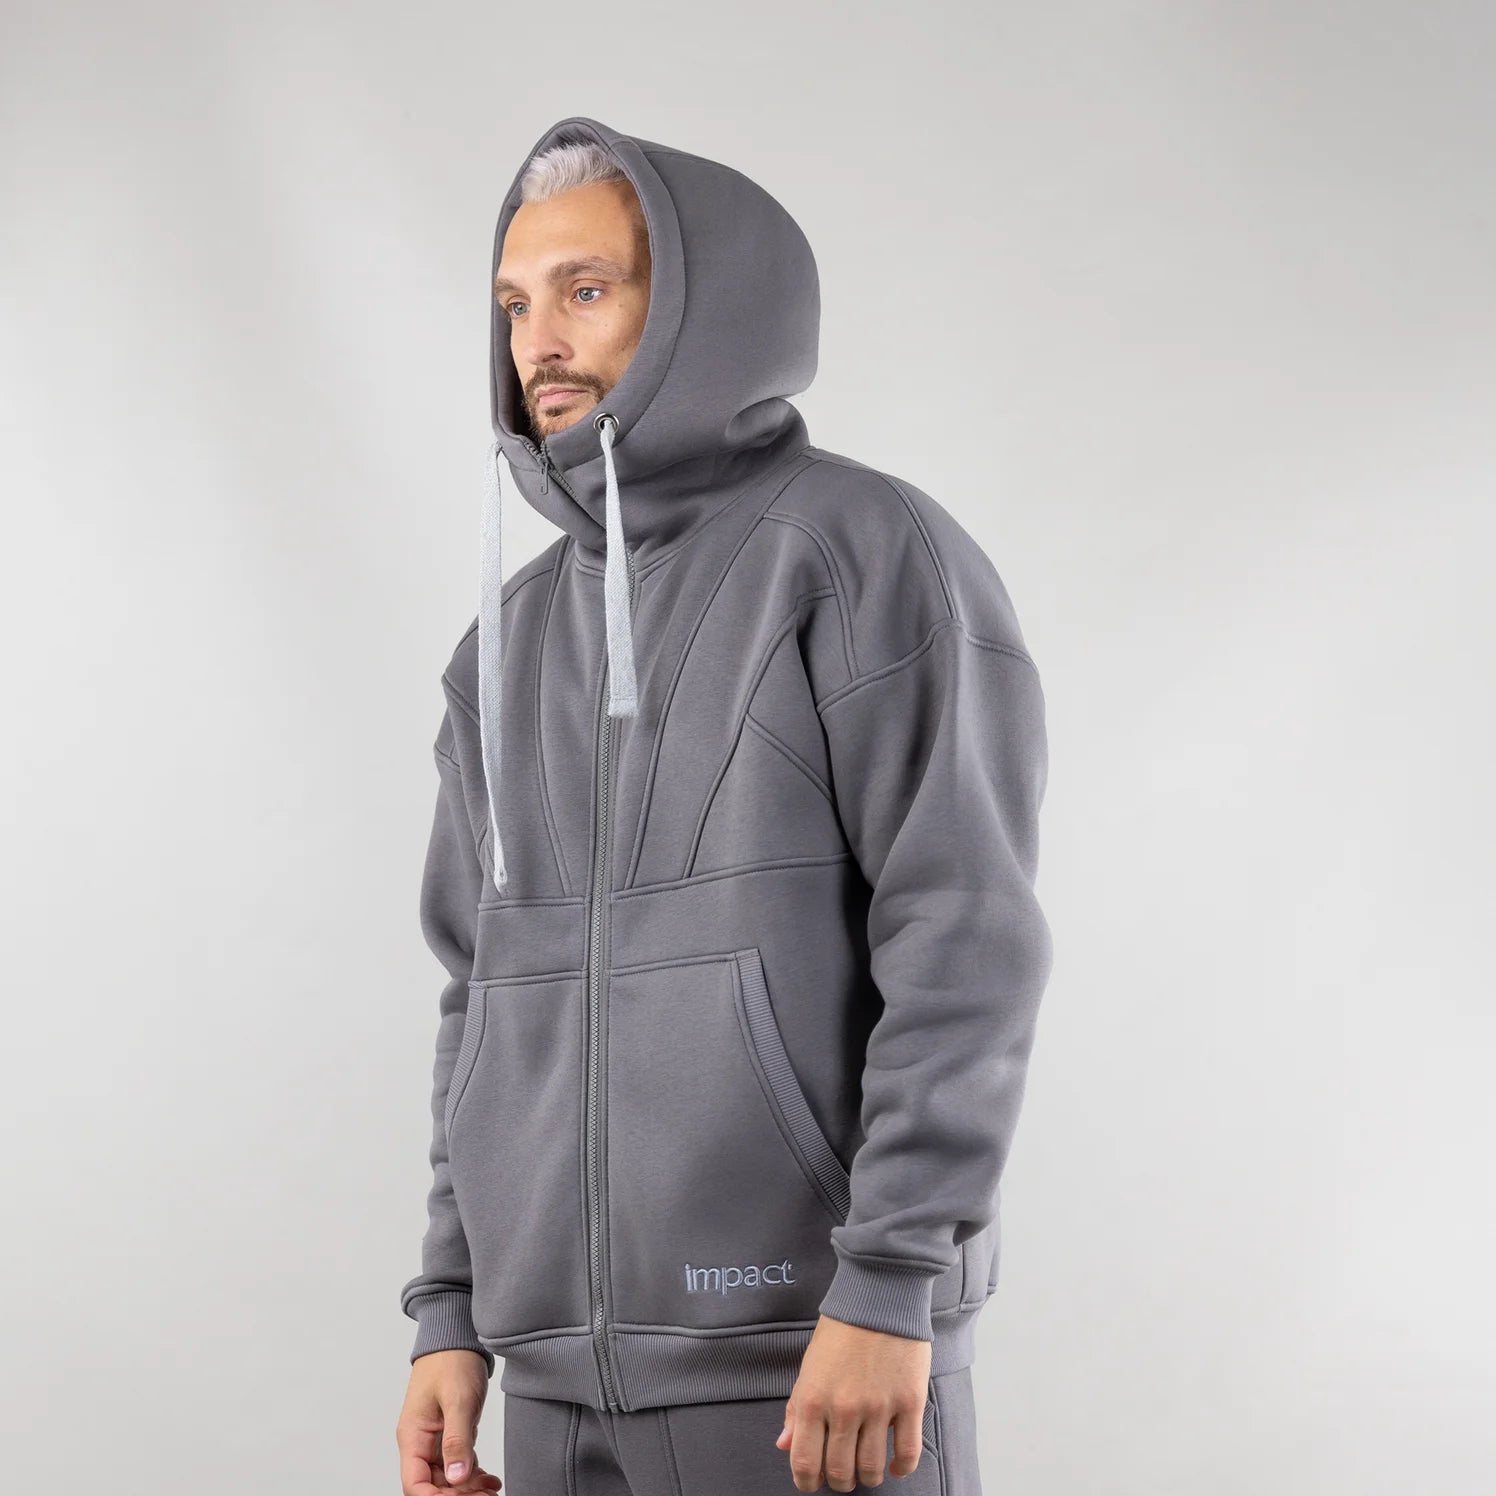 Hoodie "Introvert", warm casual zip-up hoodie